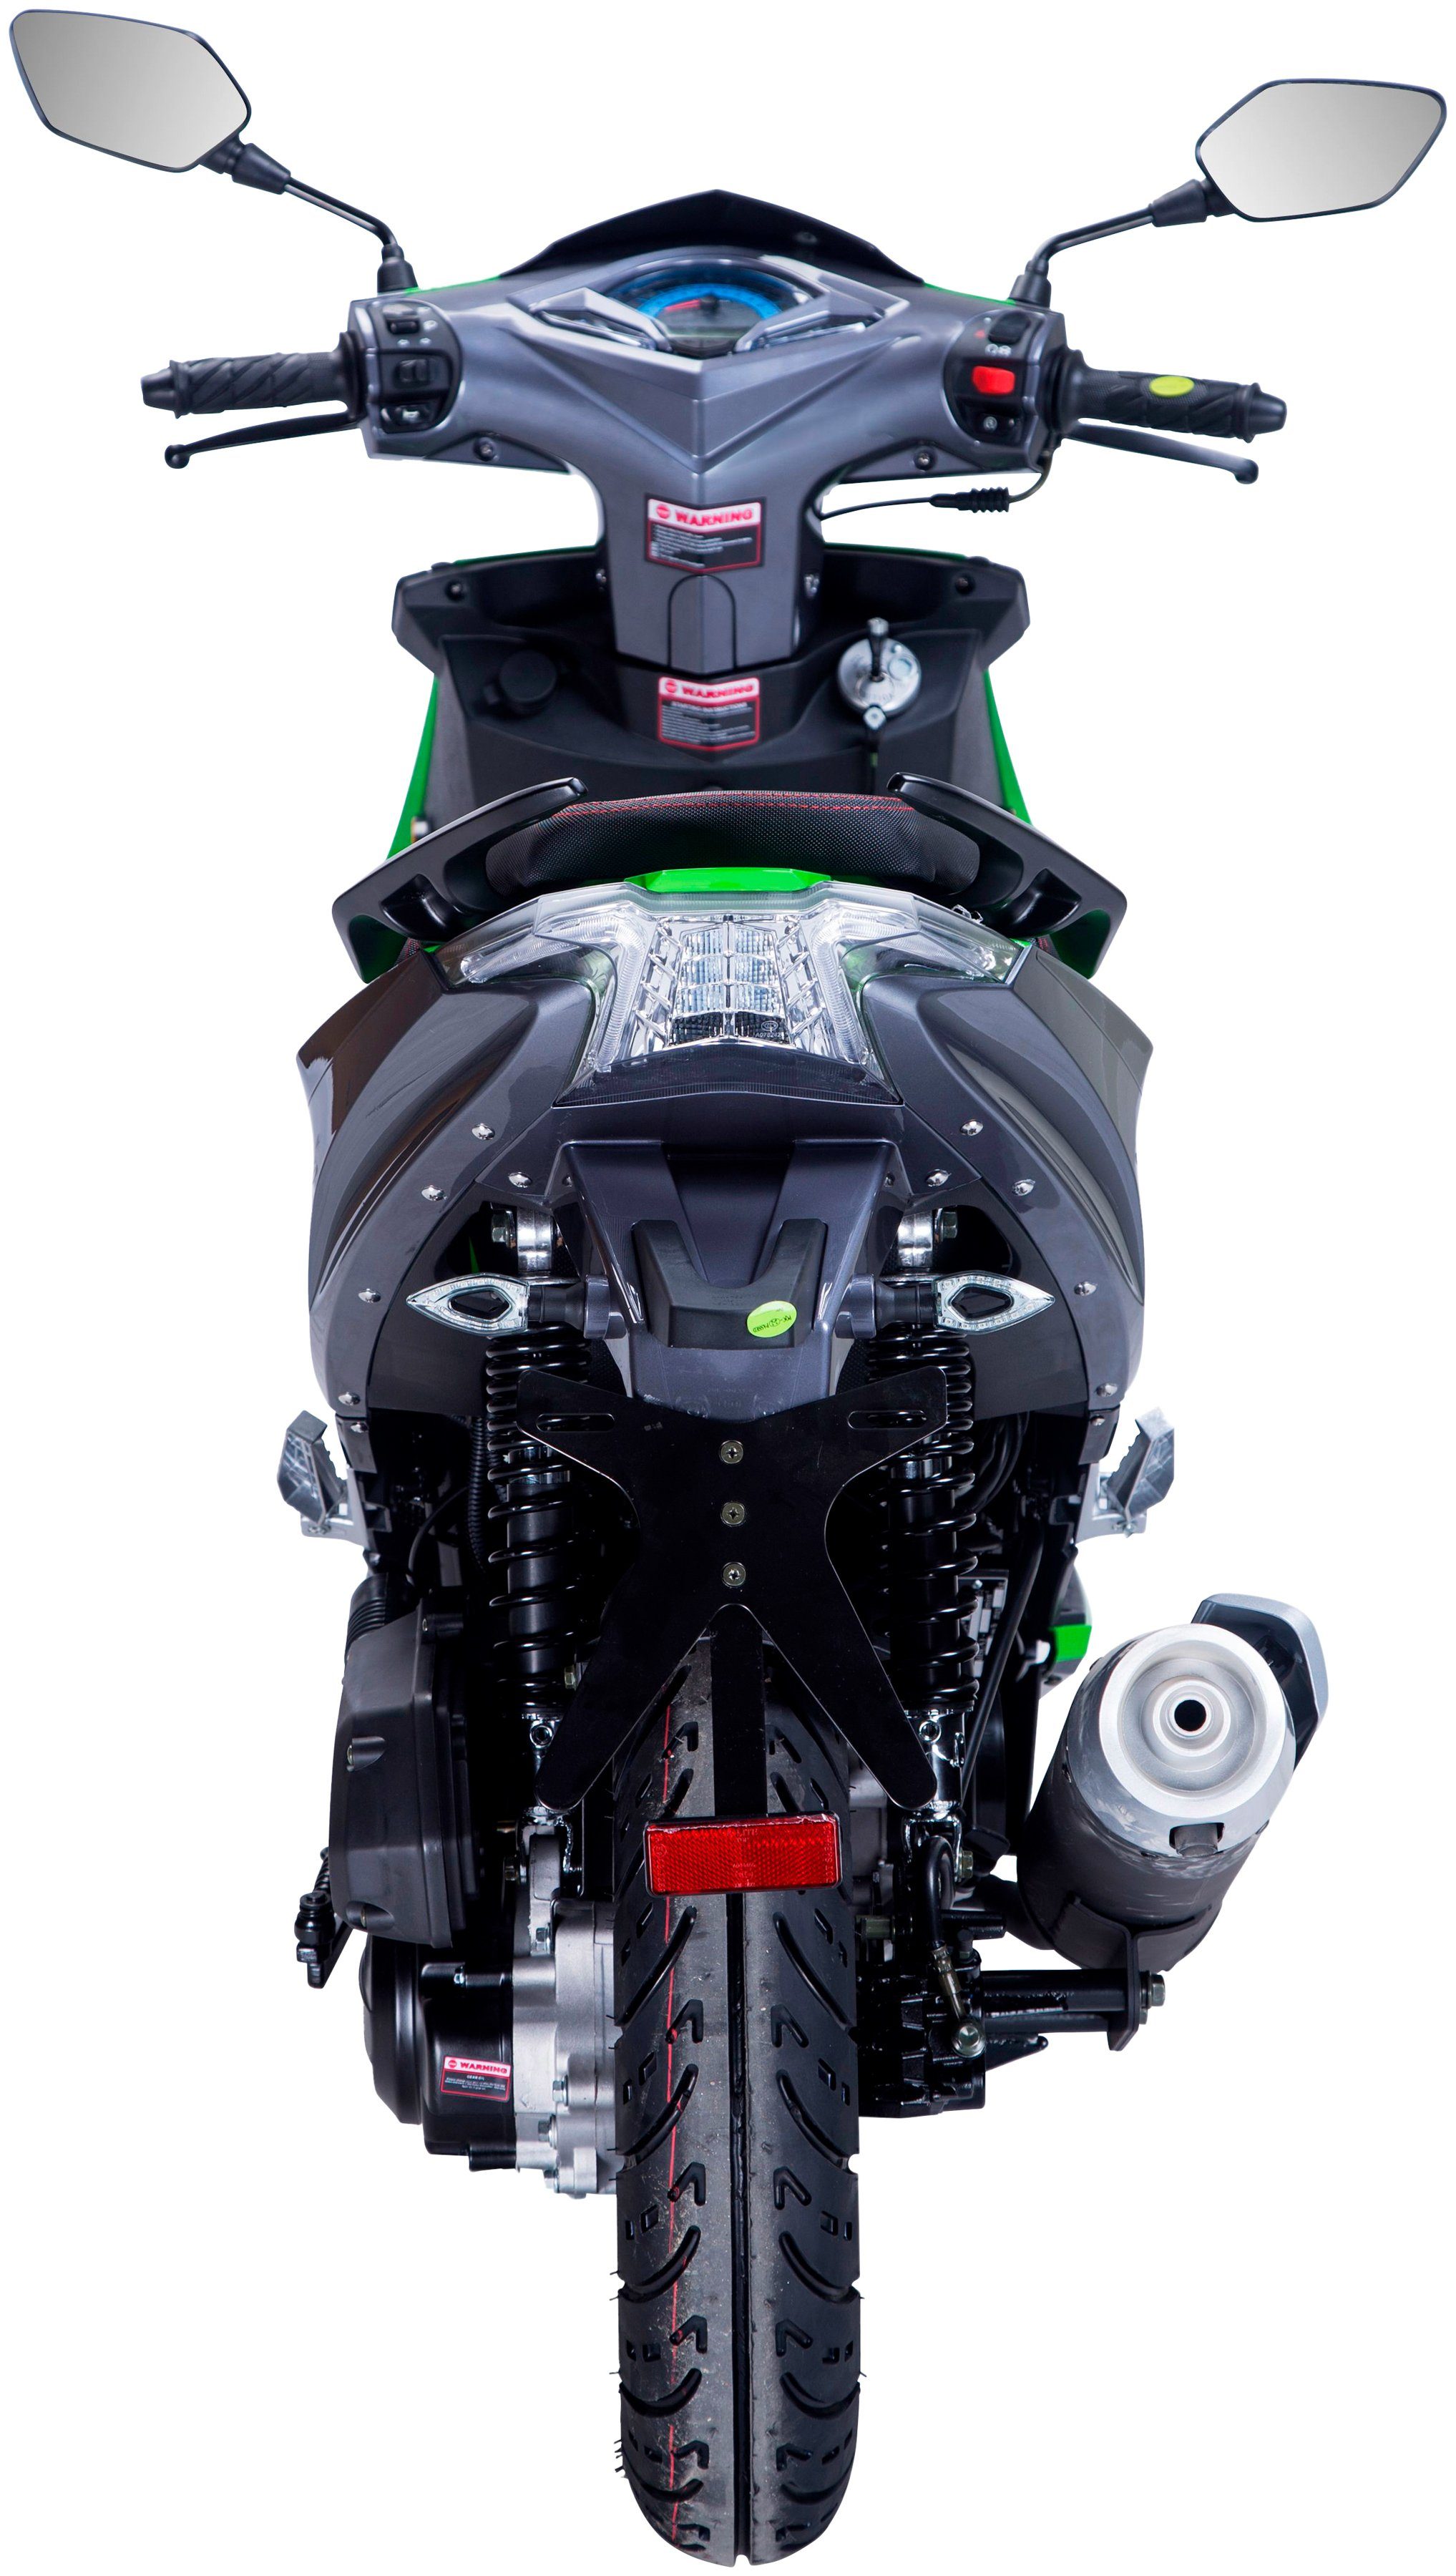 GT UNION Motorroller Striker, schwarz/grün 5 Euro 45 km/h, 50 ccm